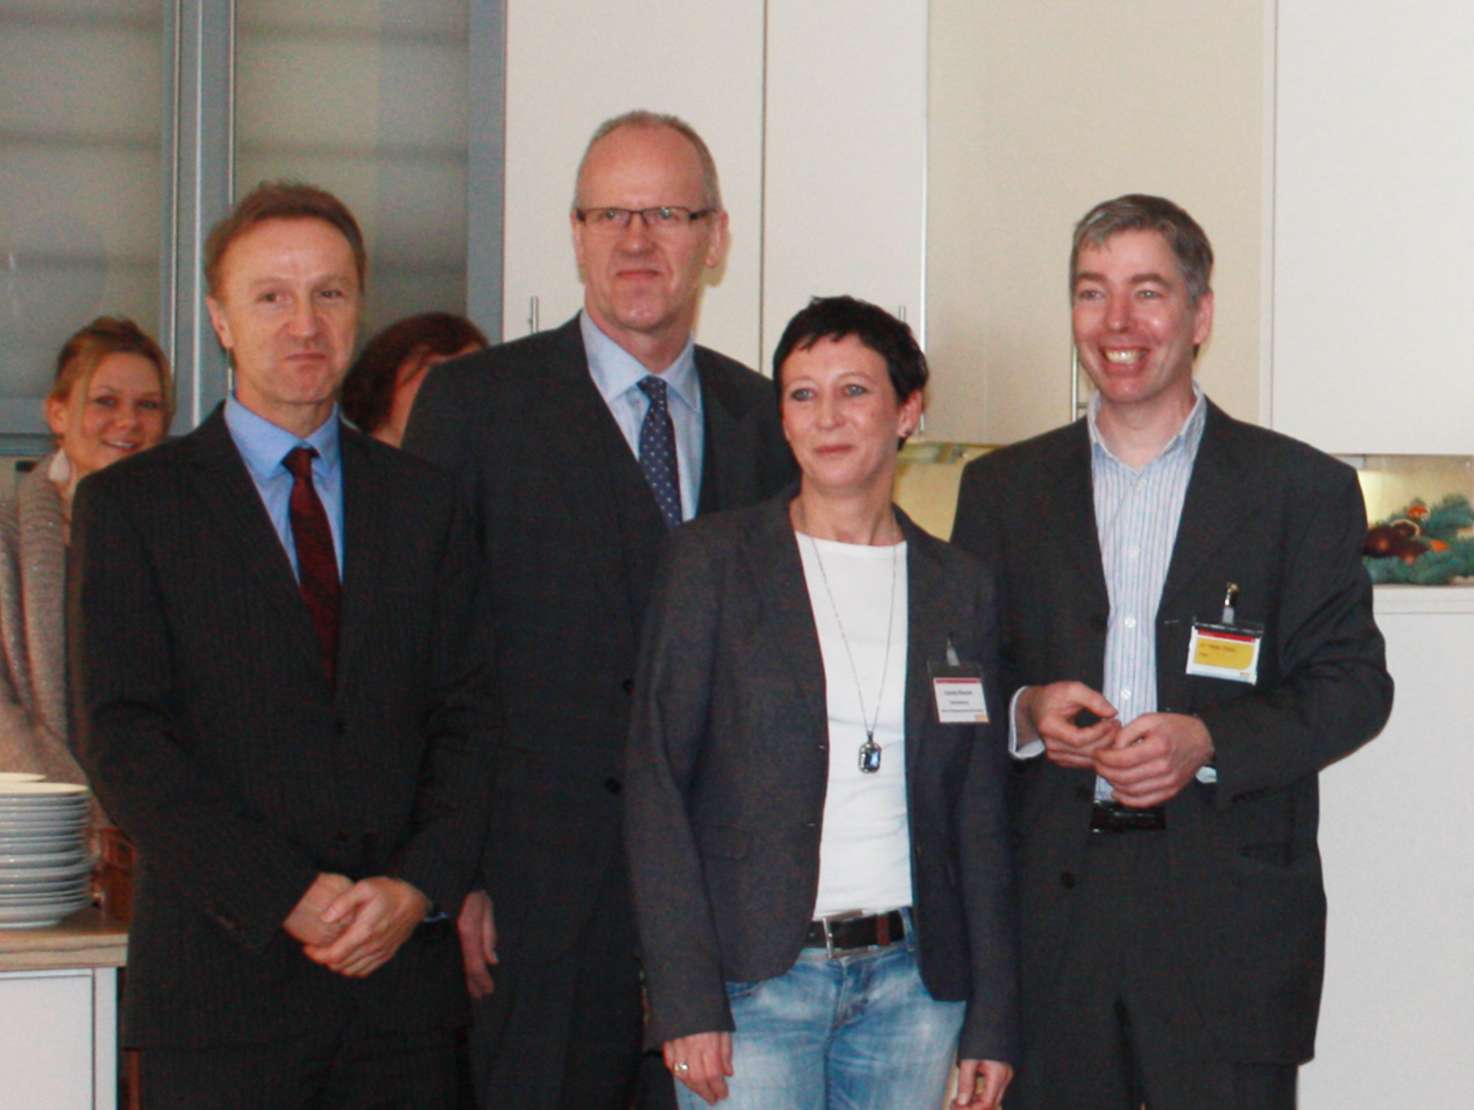 v.l.: Michael Sander, Joachim Bode, Carola Klische, Dr. Stefan Pabst